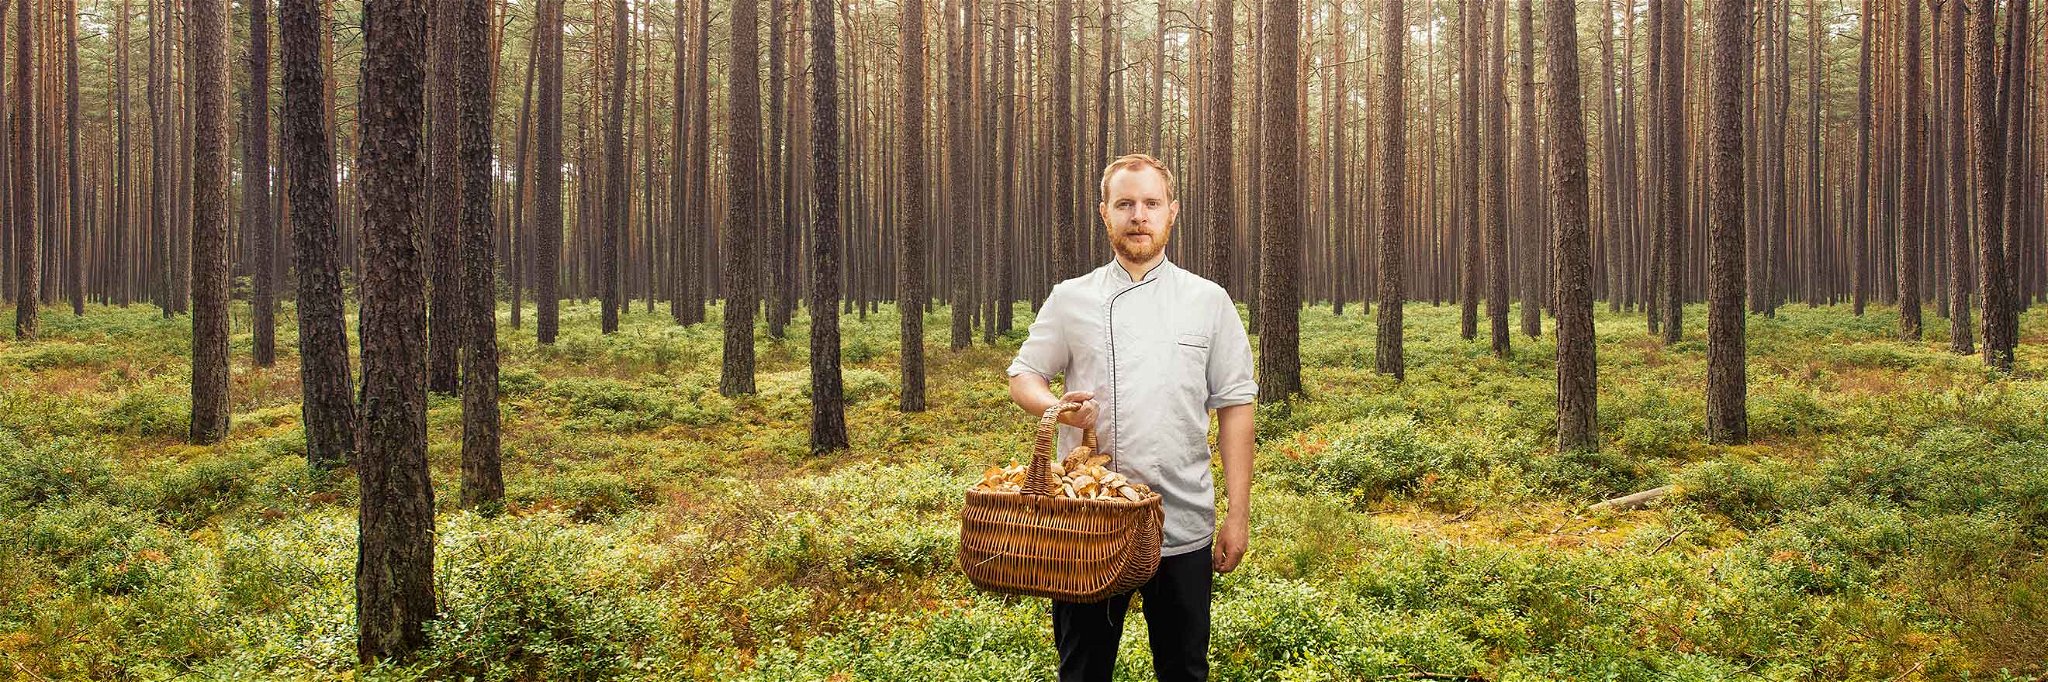 Felix Schneider verarbeitet in seinem »Sosein« in der Nähe von Nürnberg vorwiegend Produkte aus der Region. Und so zieht er gern in den Wald, um Pilze zu sammeln.&nbsp;